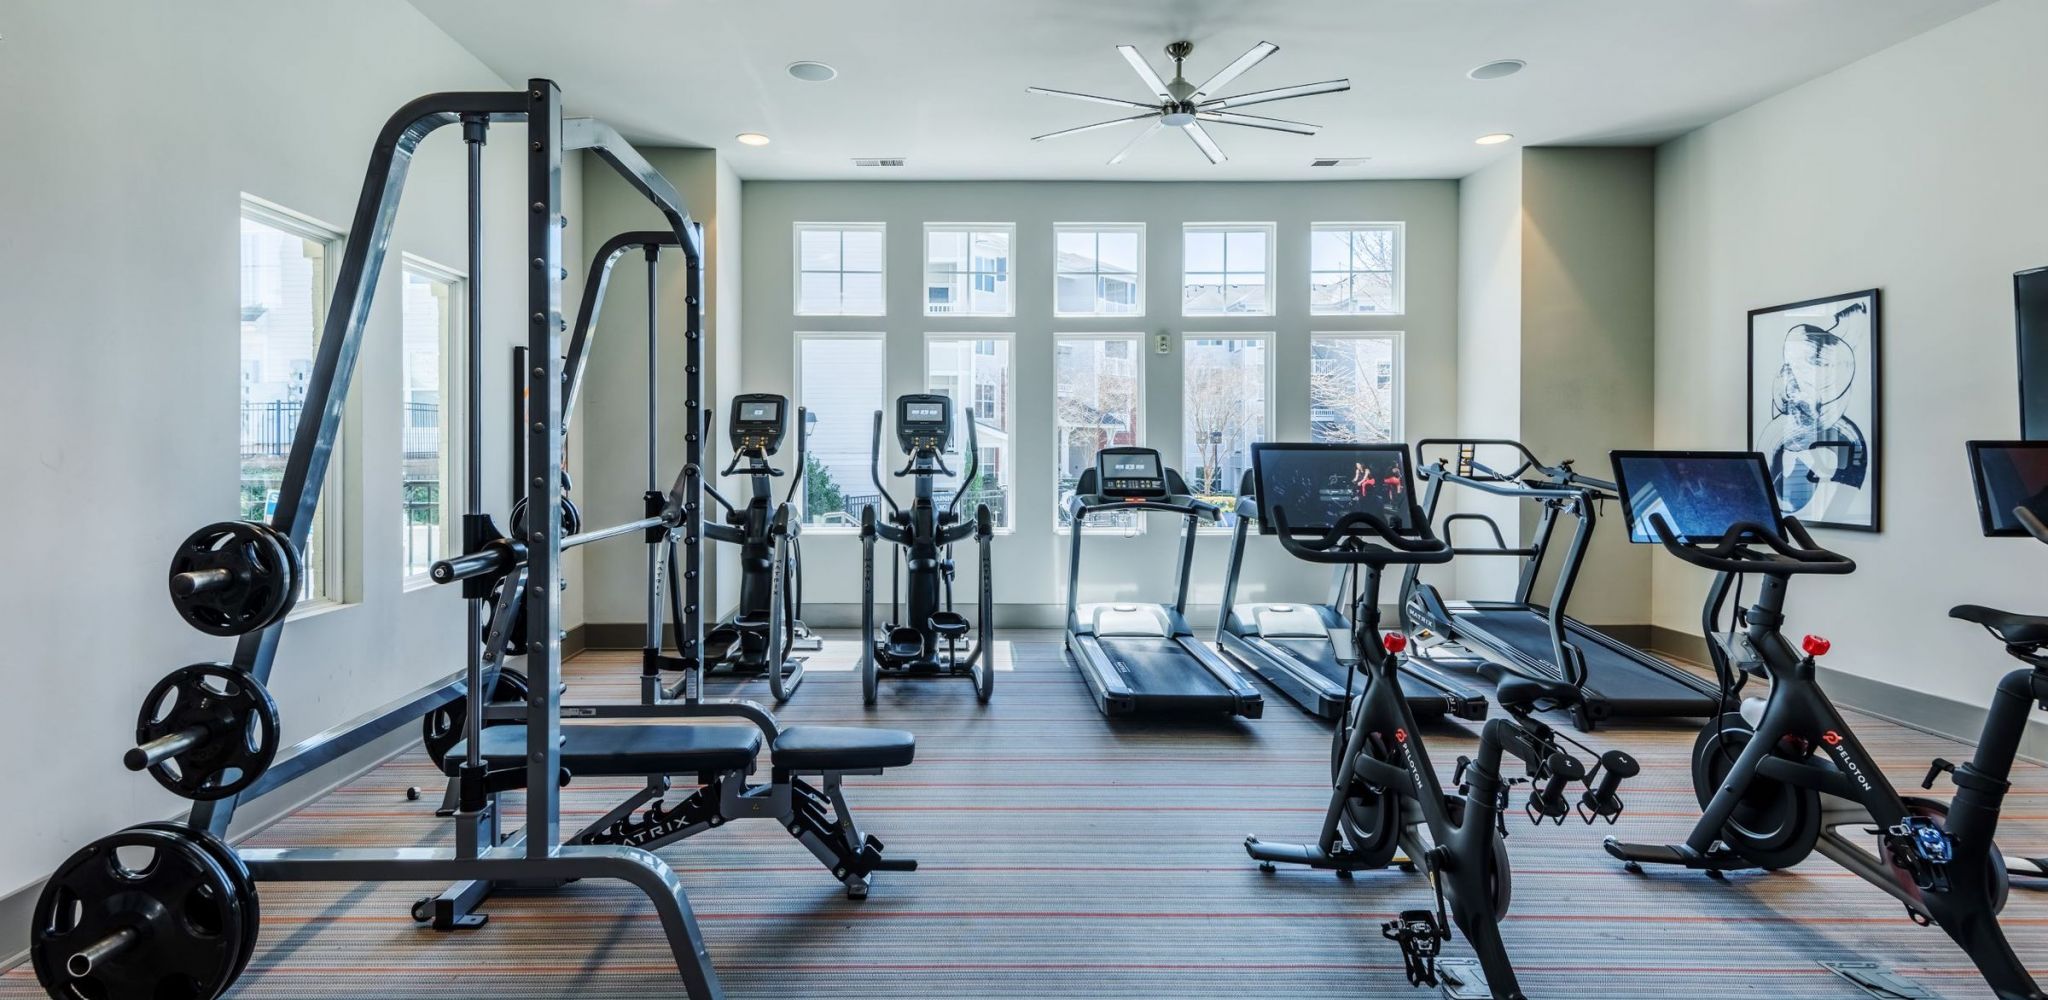 Hawthorne Davis Park resident fitness center with modern training equipment